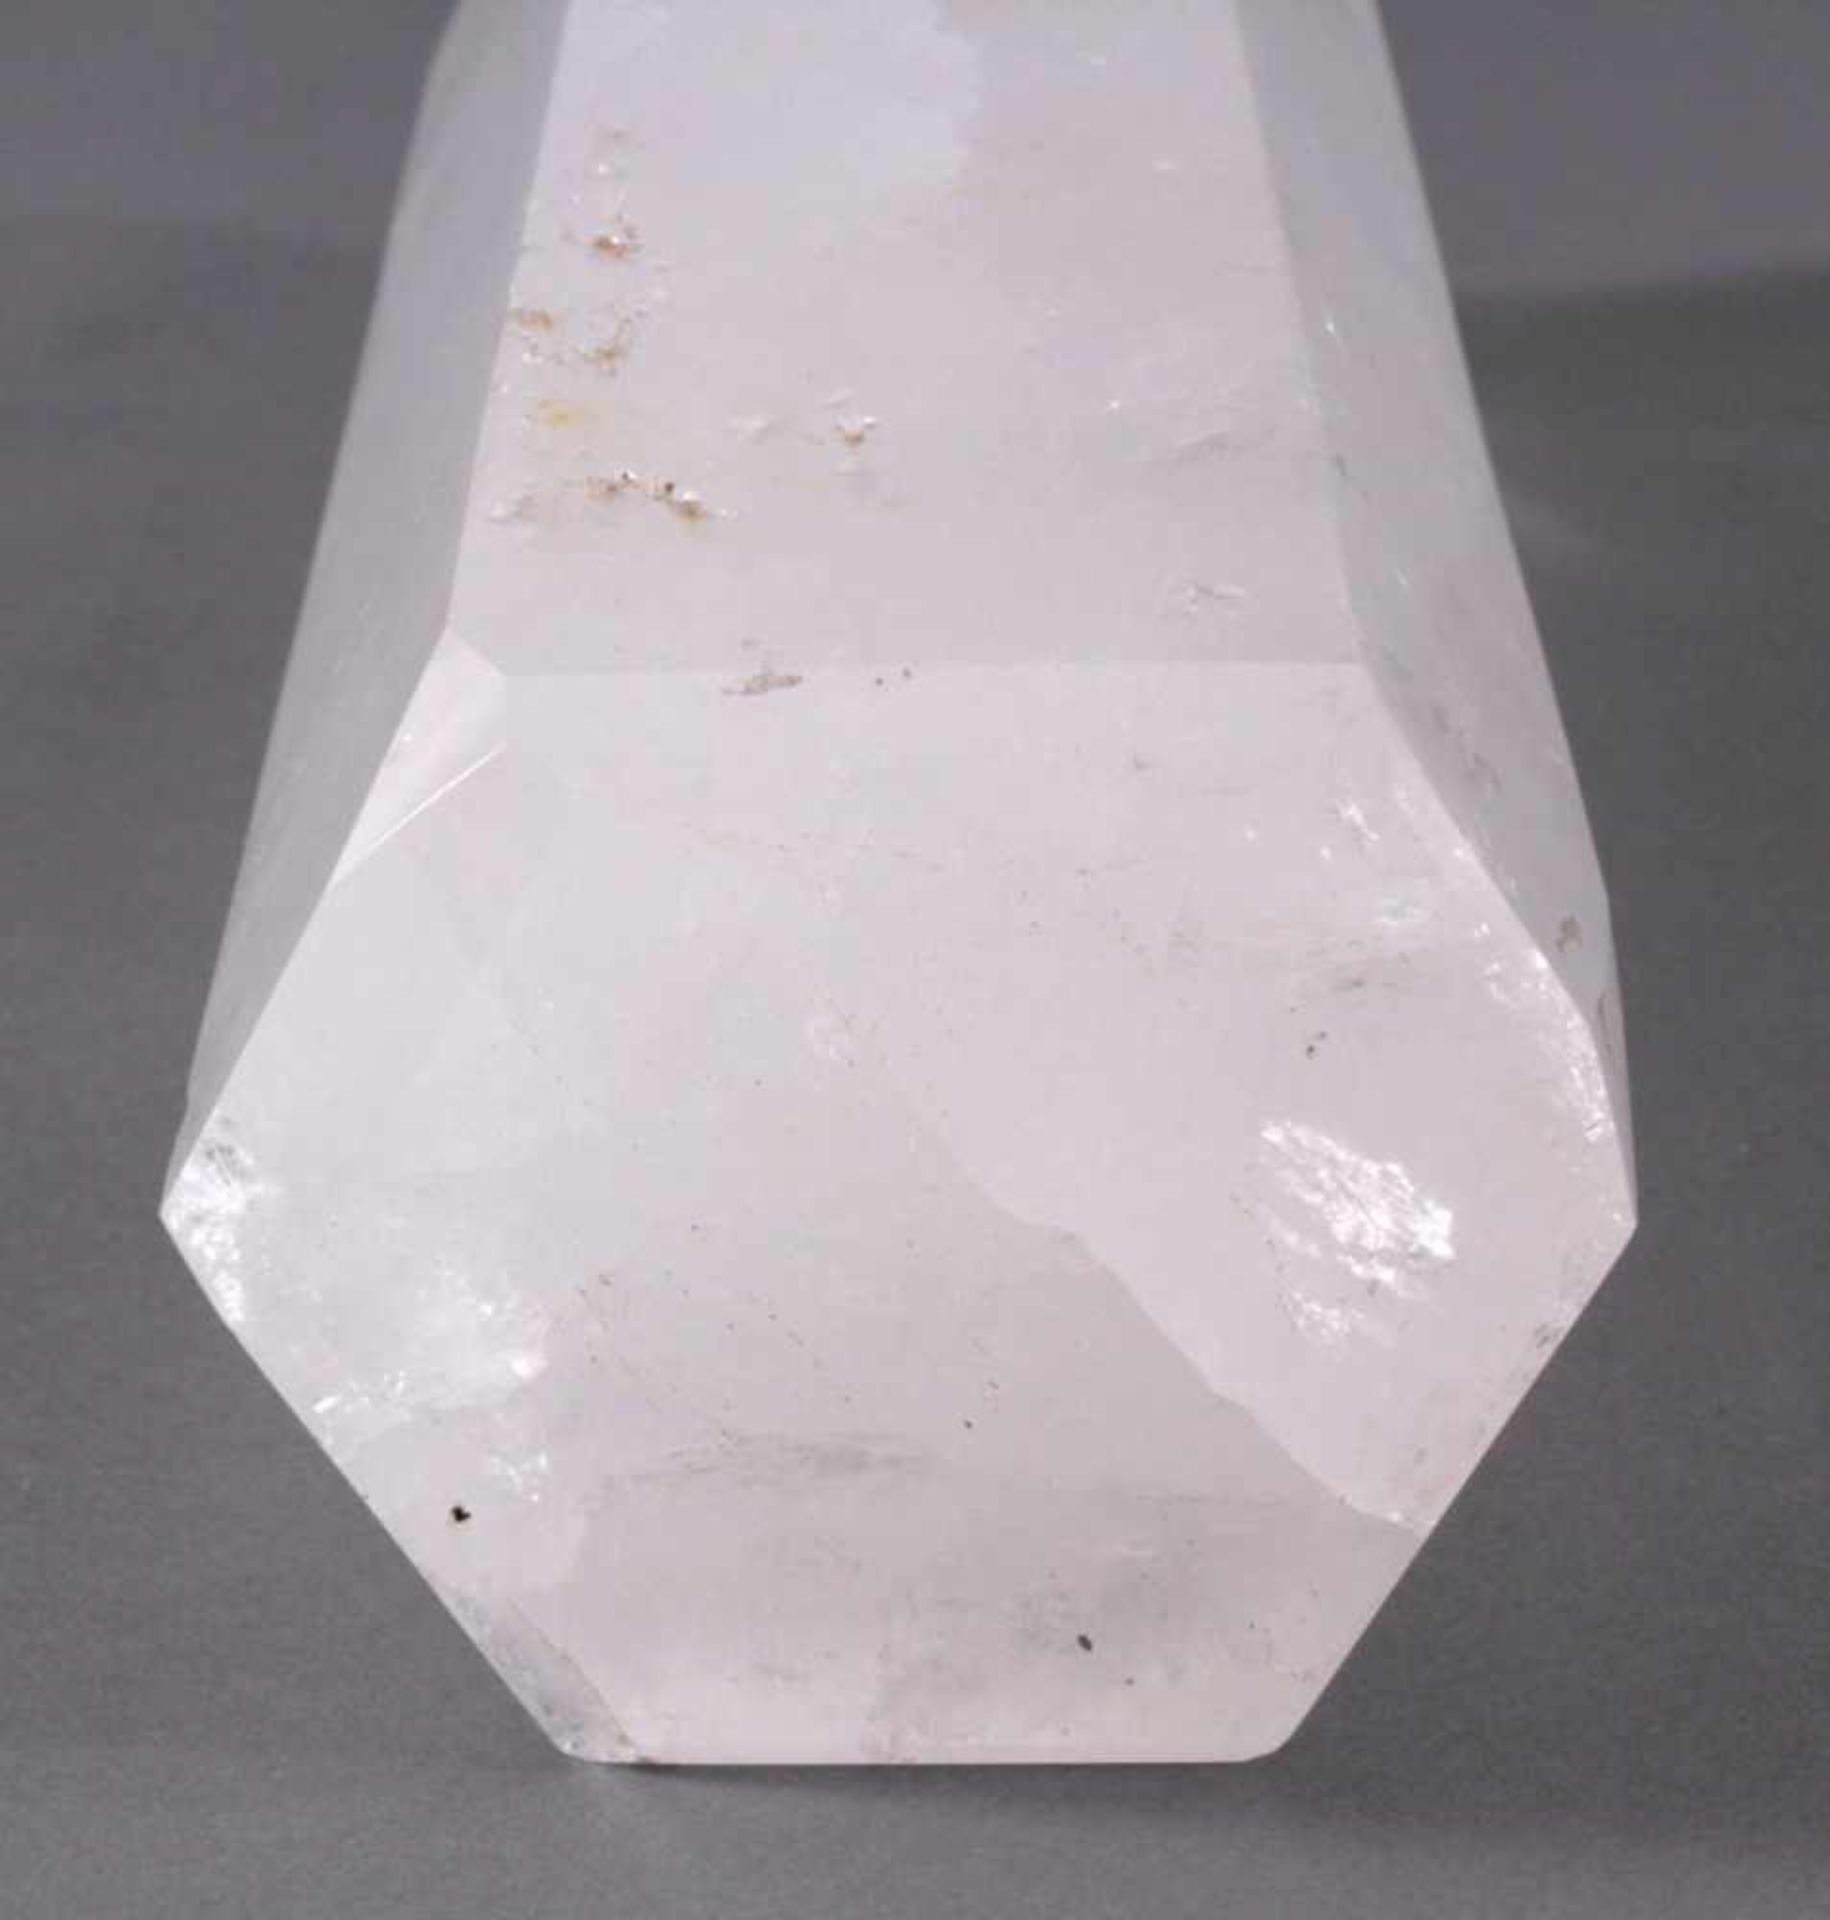 Bergkristall-Spitze in Form eines Obelsiken, 10,9kg6-Kant geschliffen, ca. 46 x 13 x 11cm - Image 3 of 3